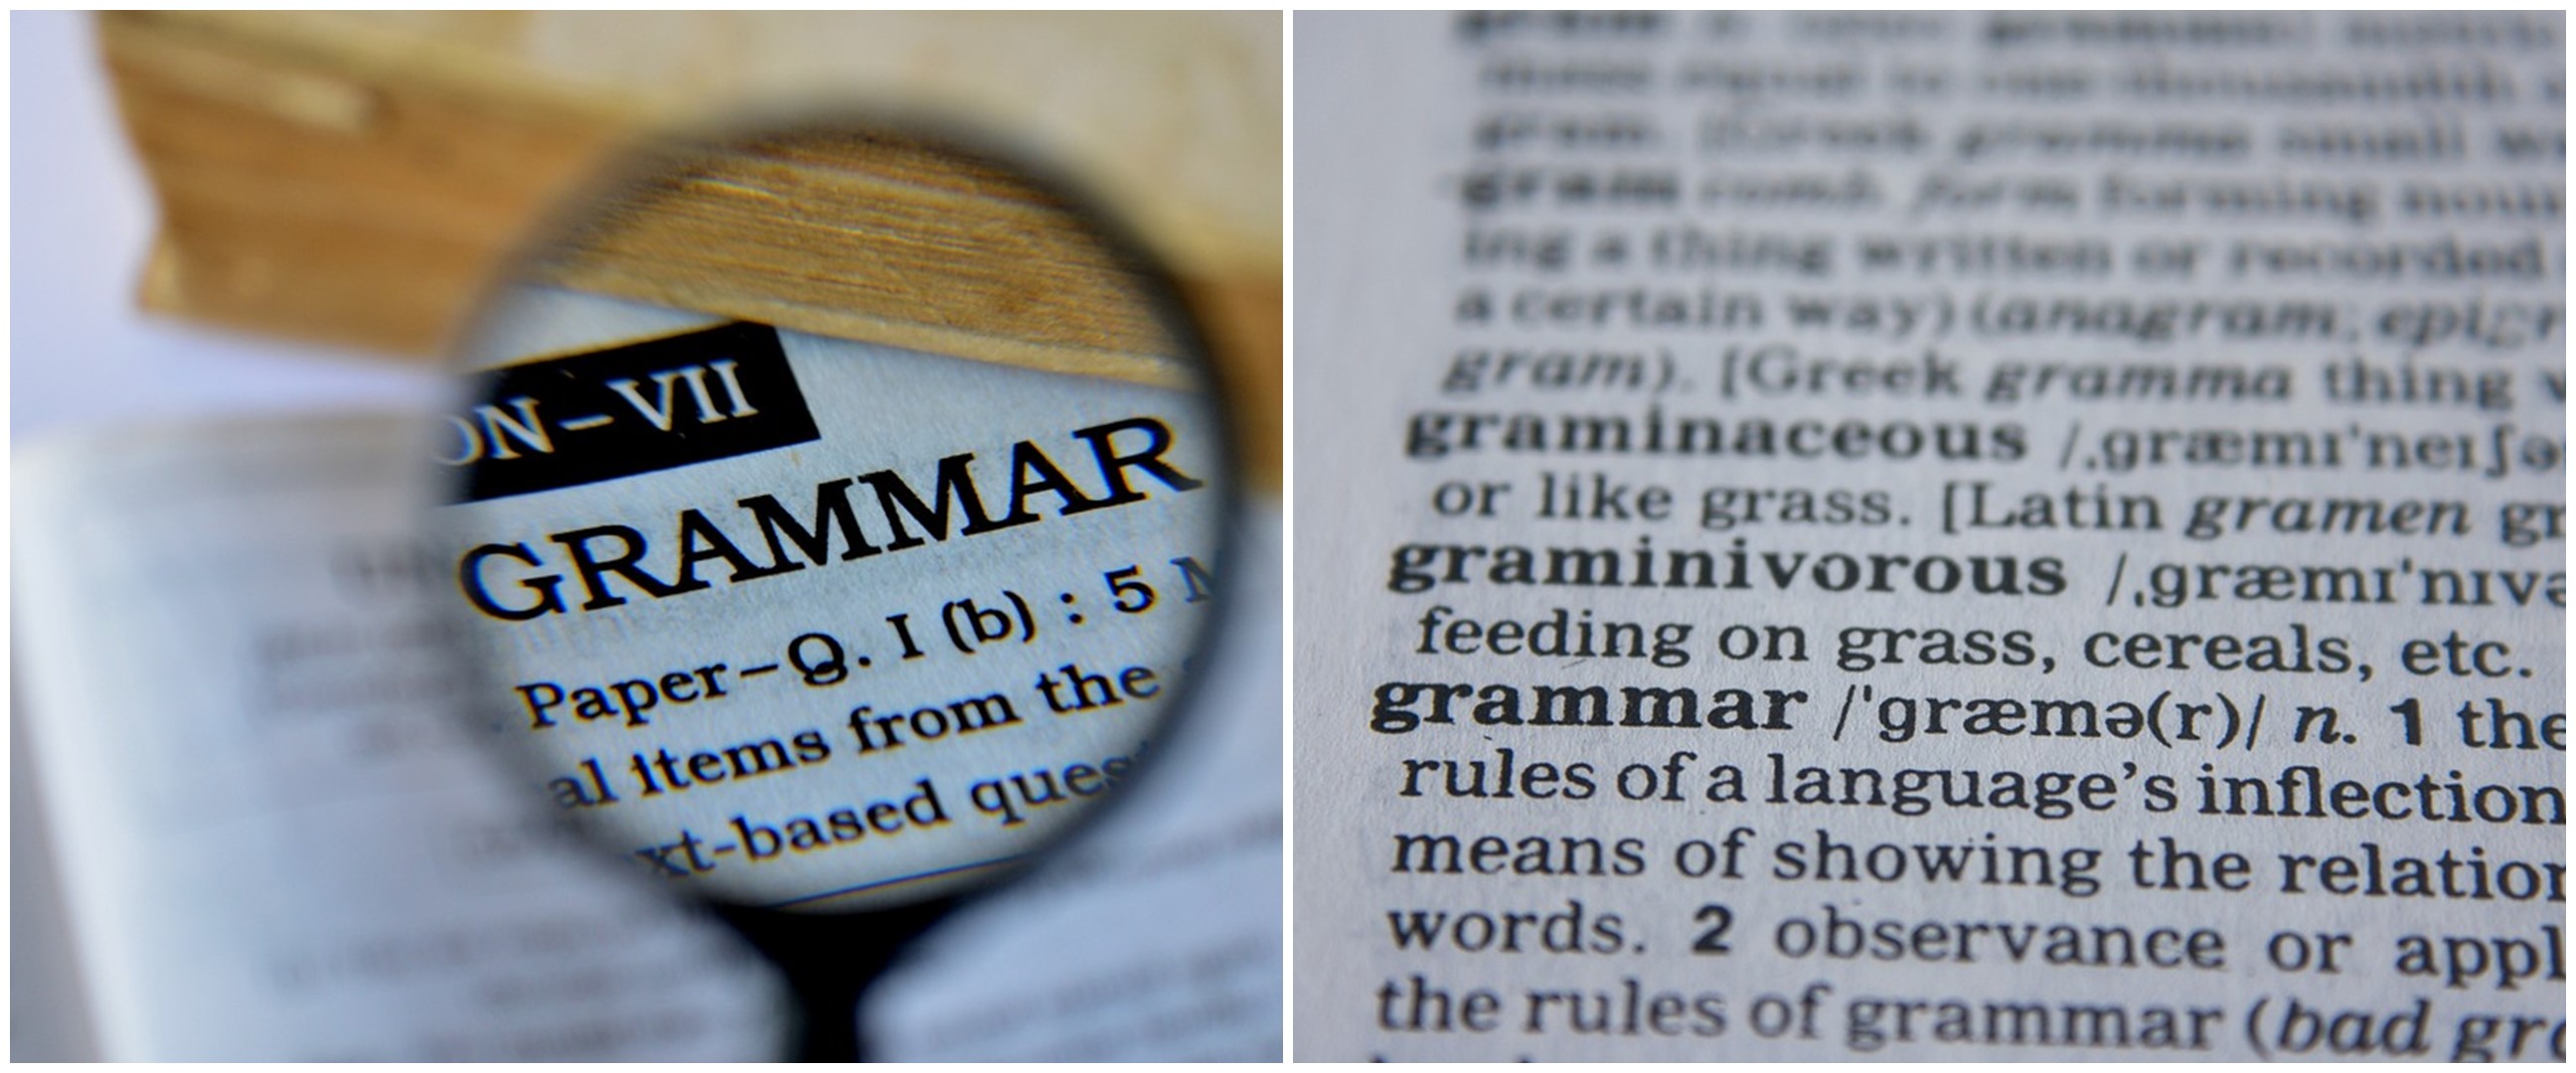 45 Contoh soal Bahasa Inggris tentang grammar beserta jawabannya